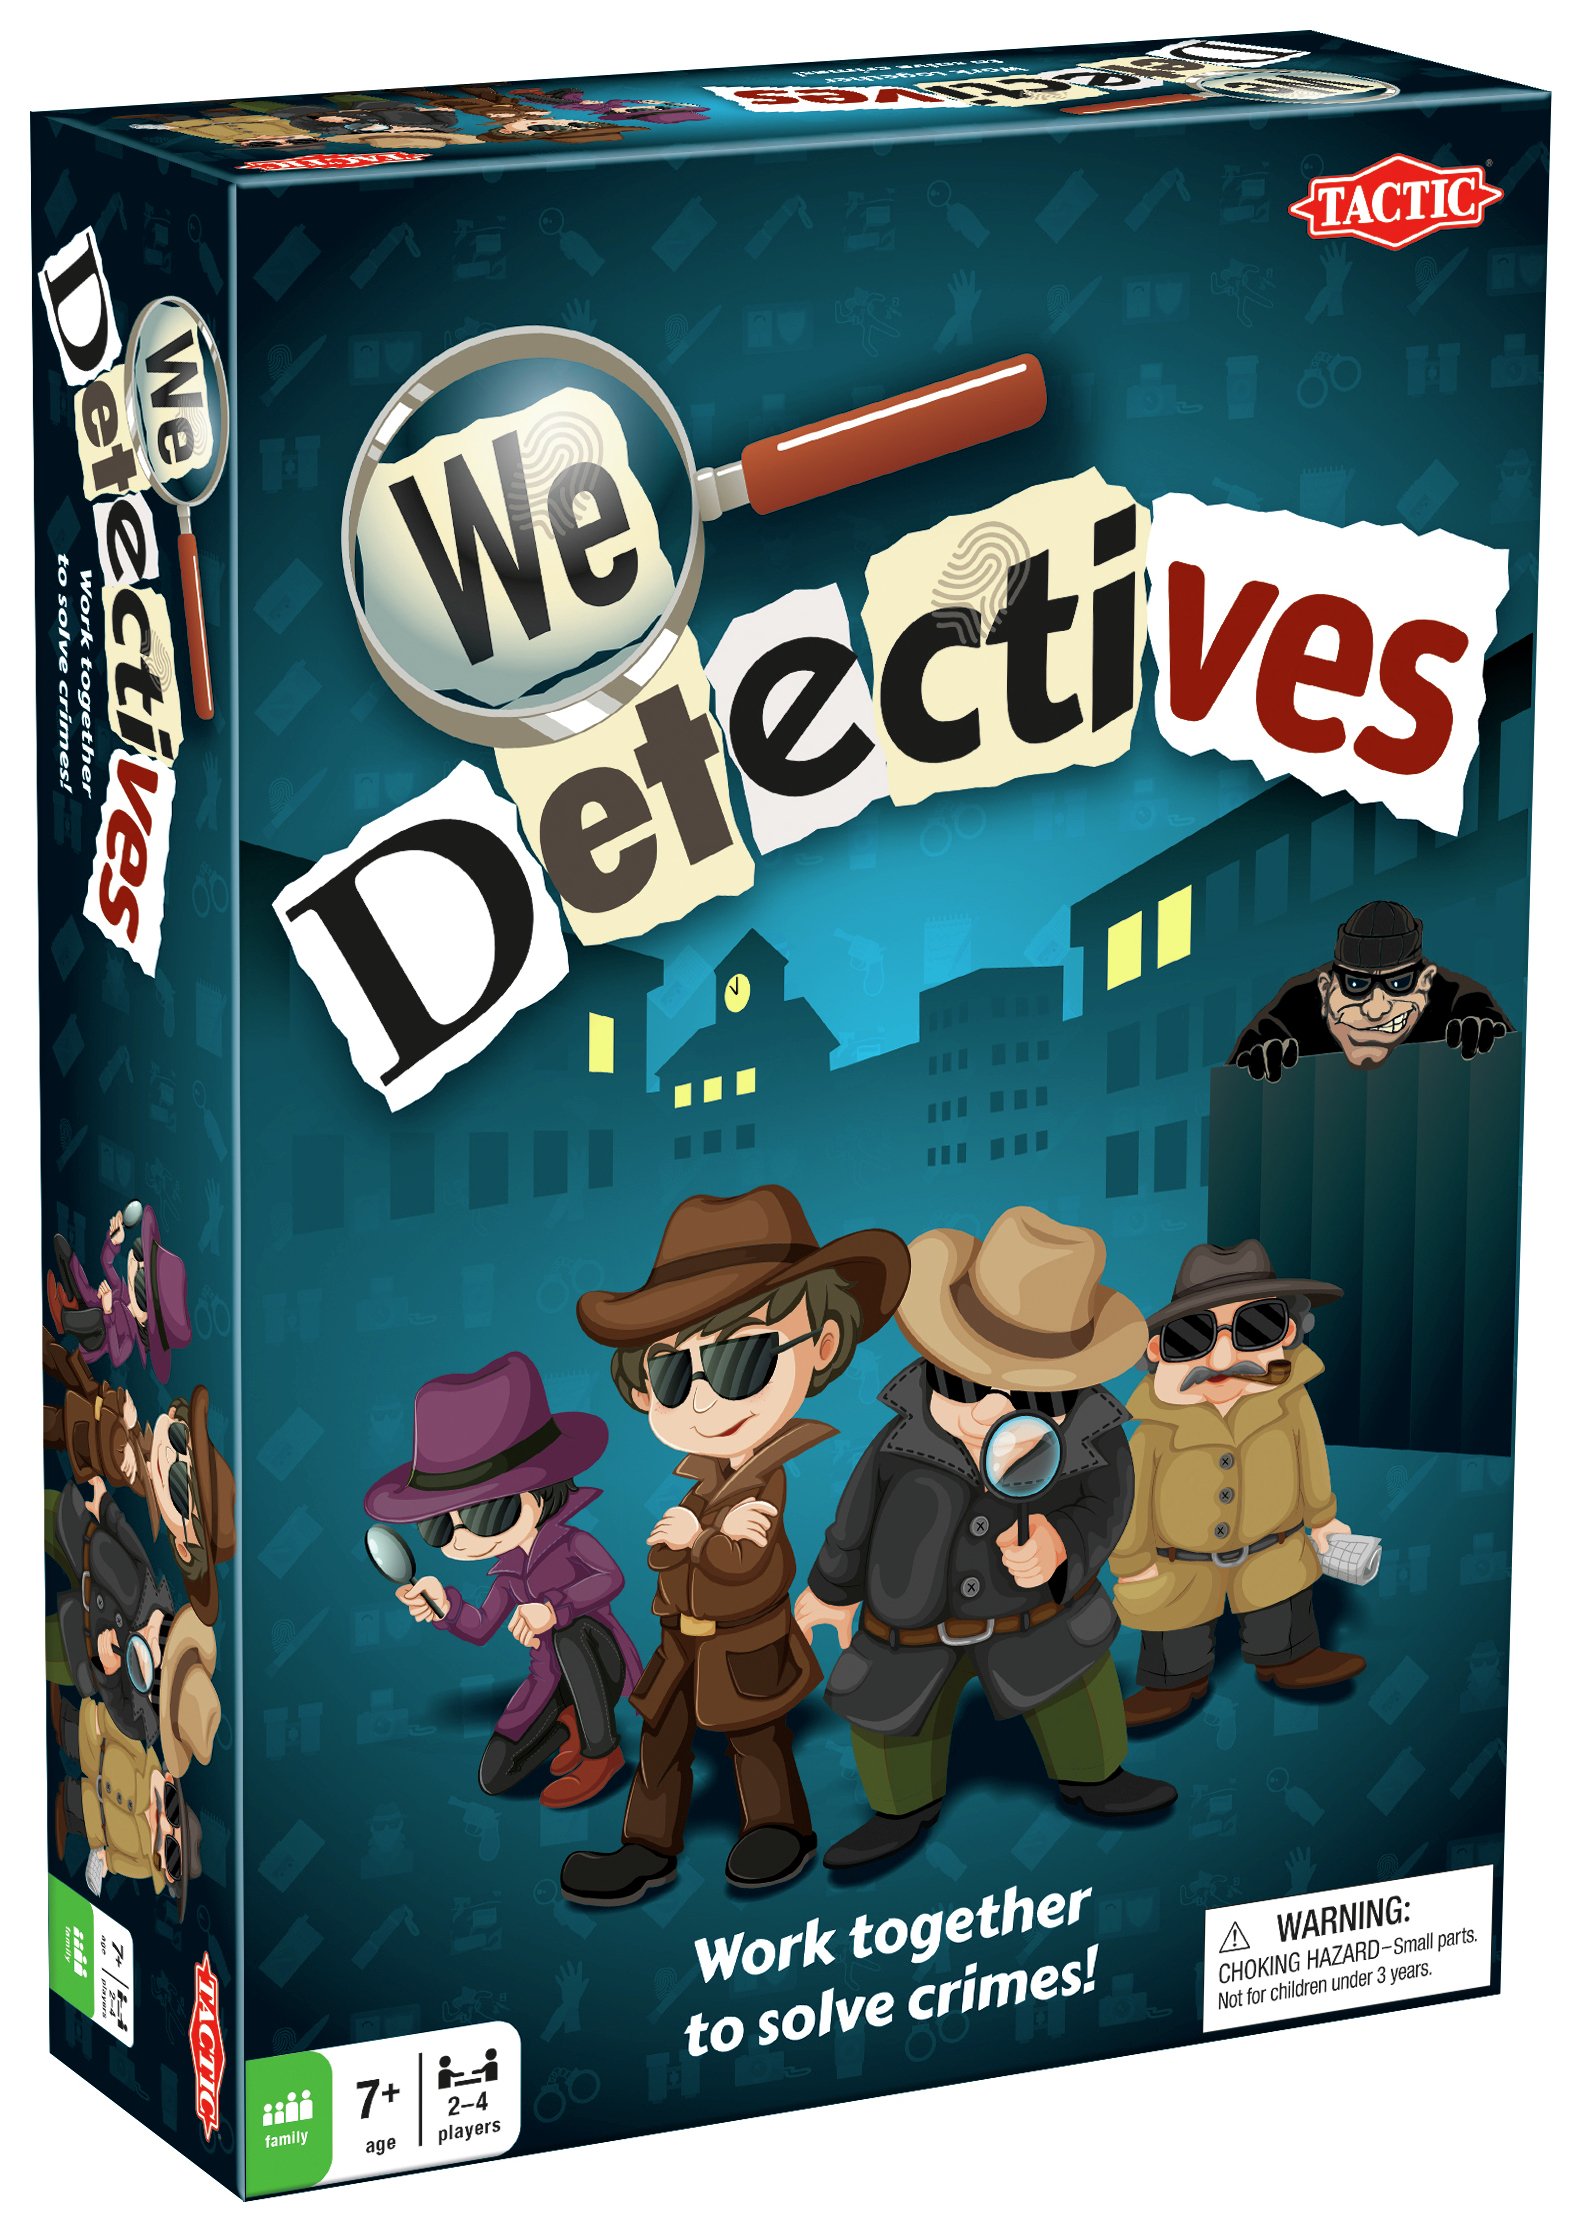 Tactics Games - We Detectives